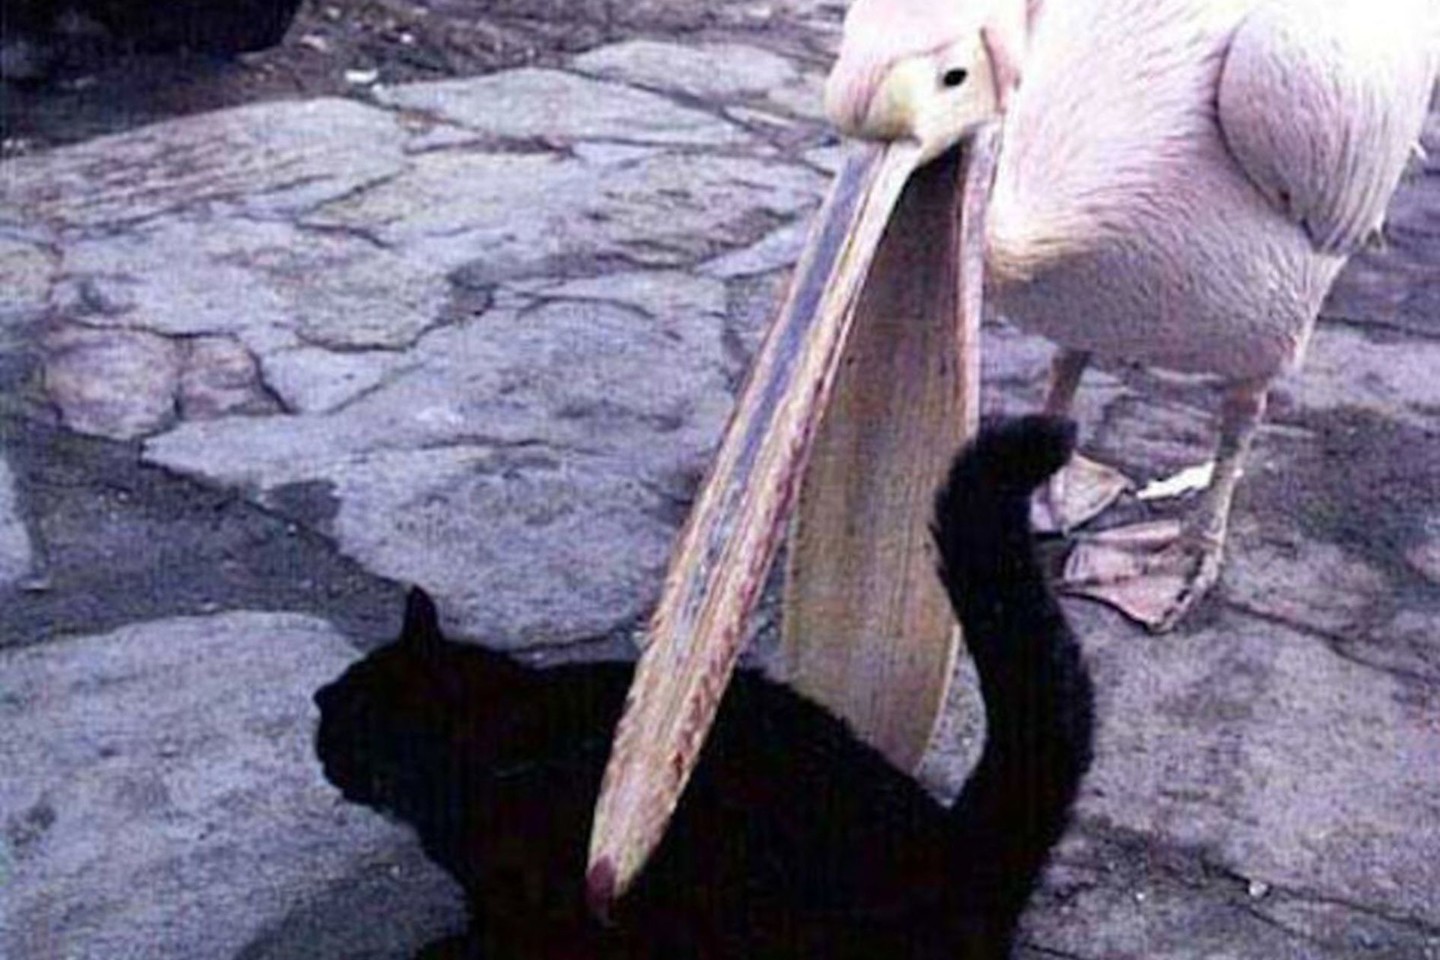 Įžūlus pelikanas gali pavogti netgi jūsų katę!<br>cleanmemes.tumblr.com nuotr.